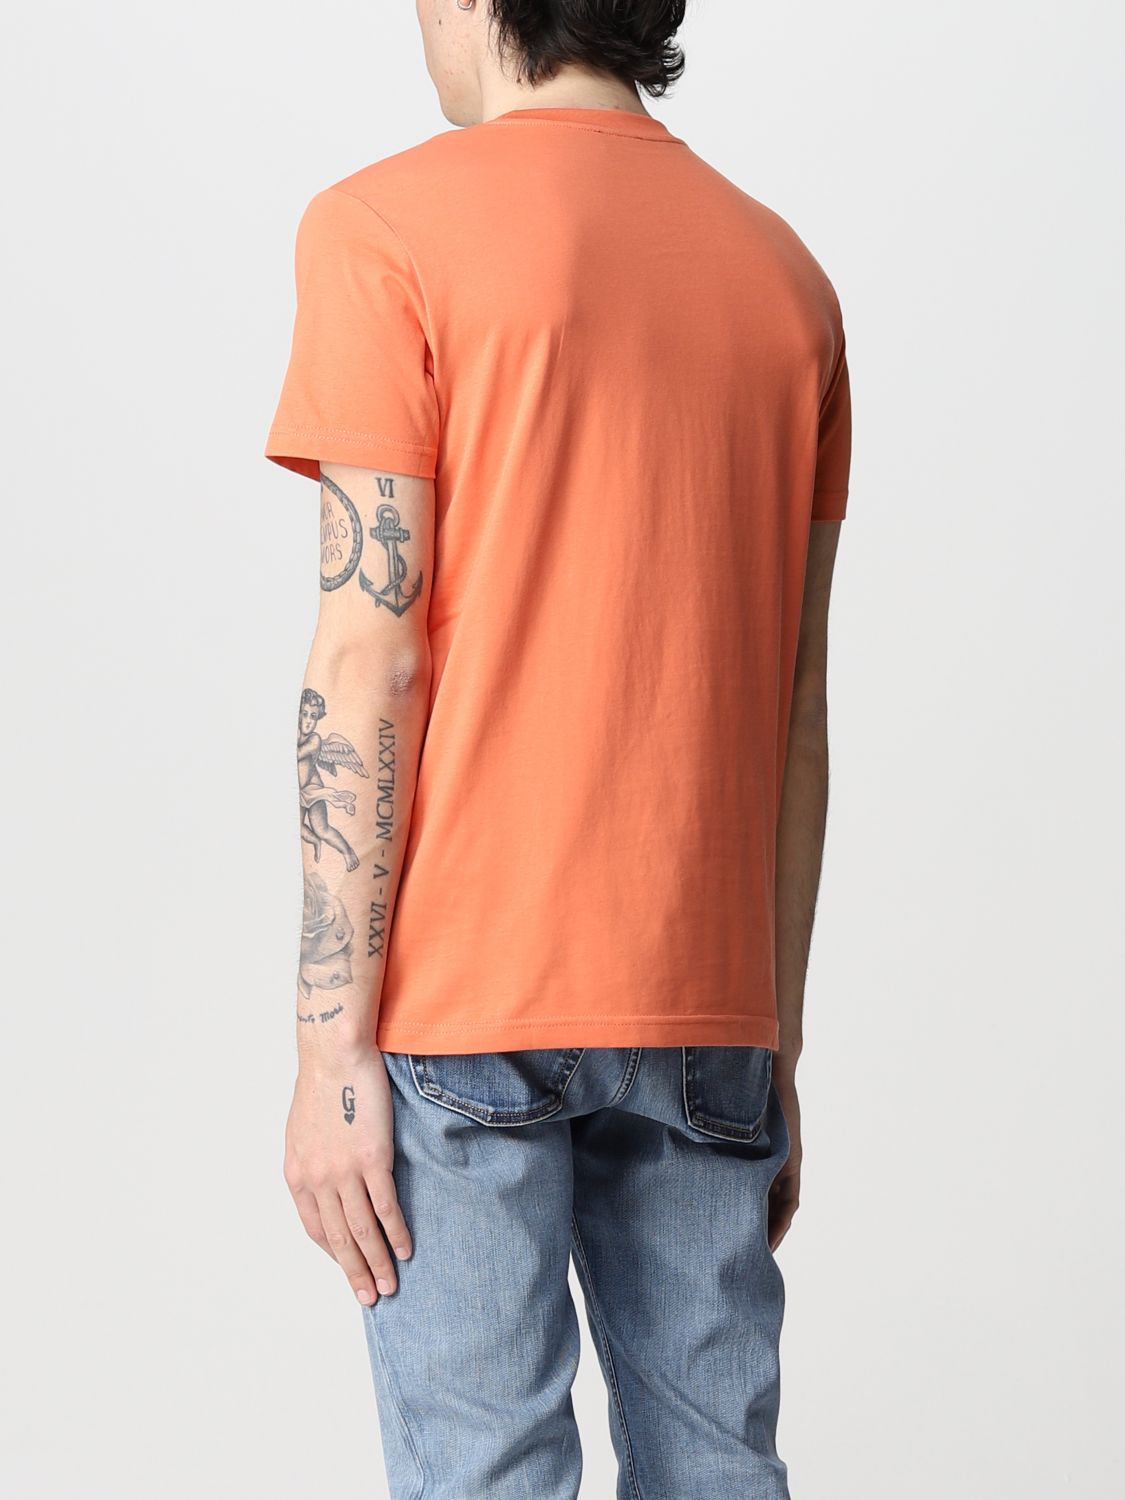 ディーゼル(DIESEL): Tシャツ メンズ - オレンジ | Tシャツ ディーゼル A038160GRAM GIGLIO.COM